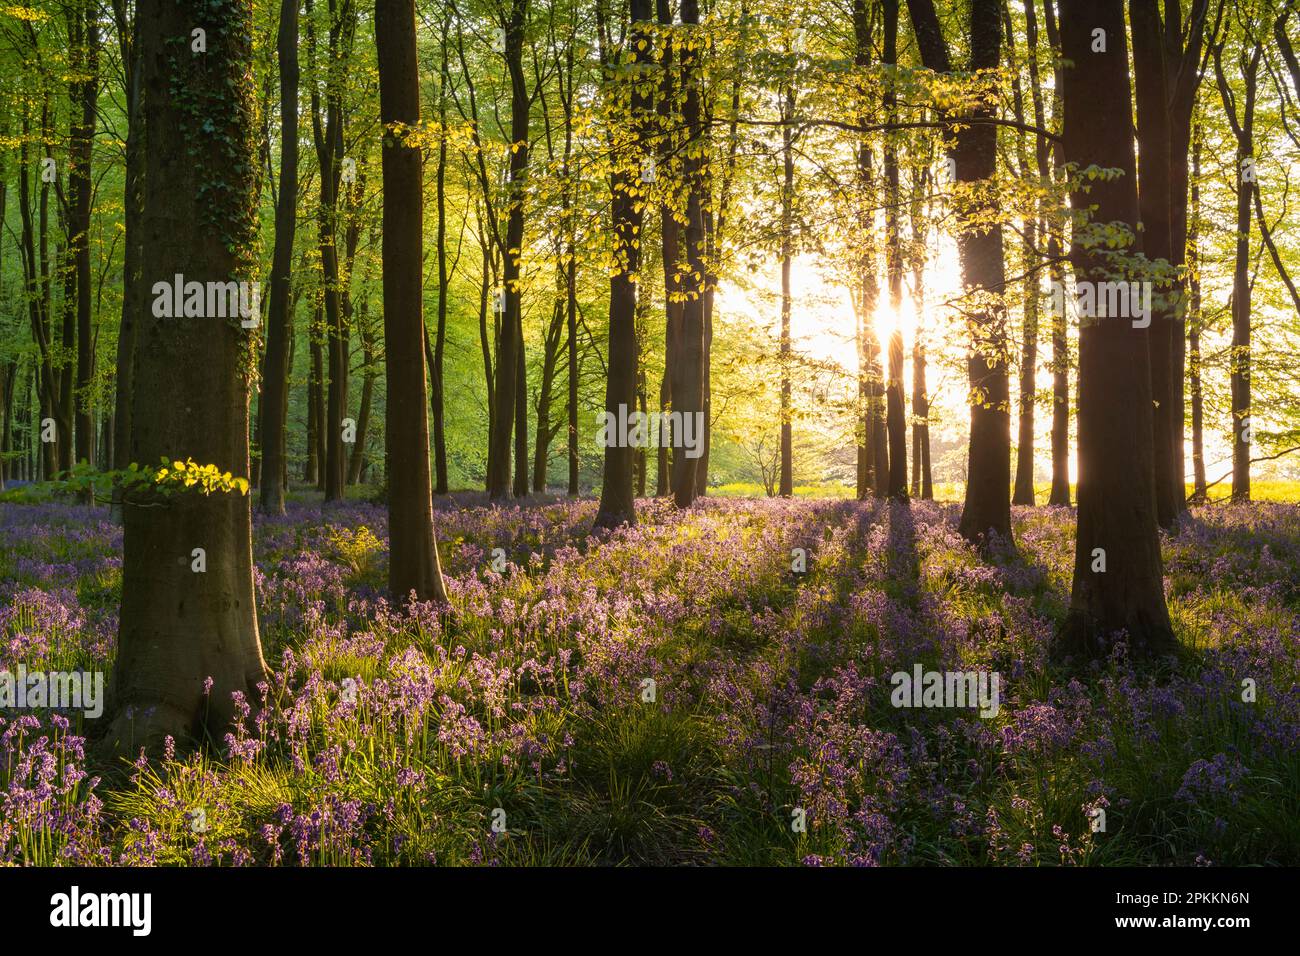 Soleil du soir se diffusant dans une forêt de bluebell au printemps, West Woods, Wiltshire, Angleterre, Royaume-Uni, Europe Banque D'Images